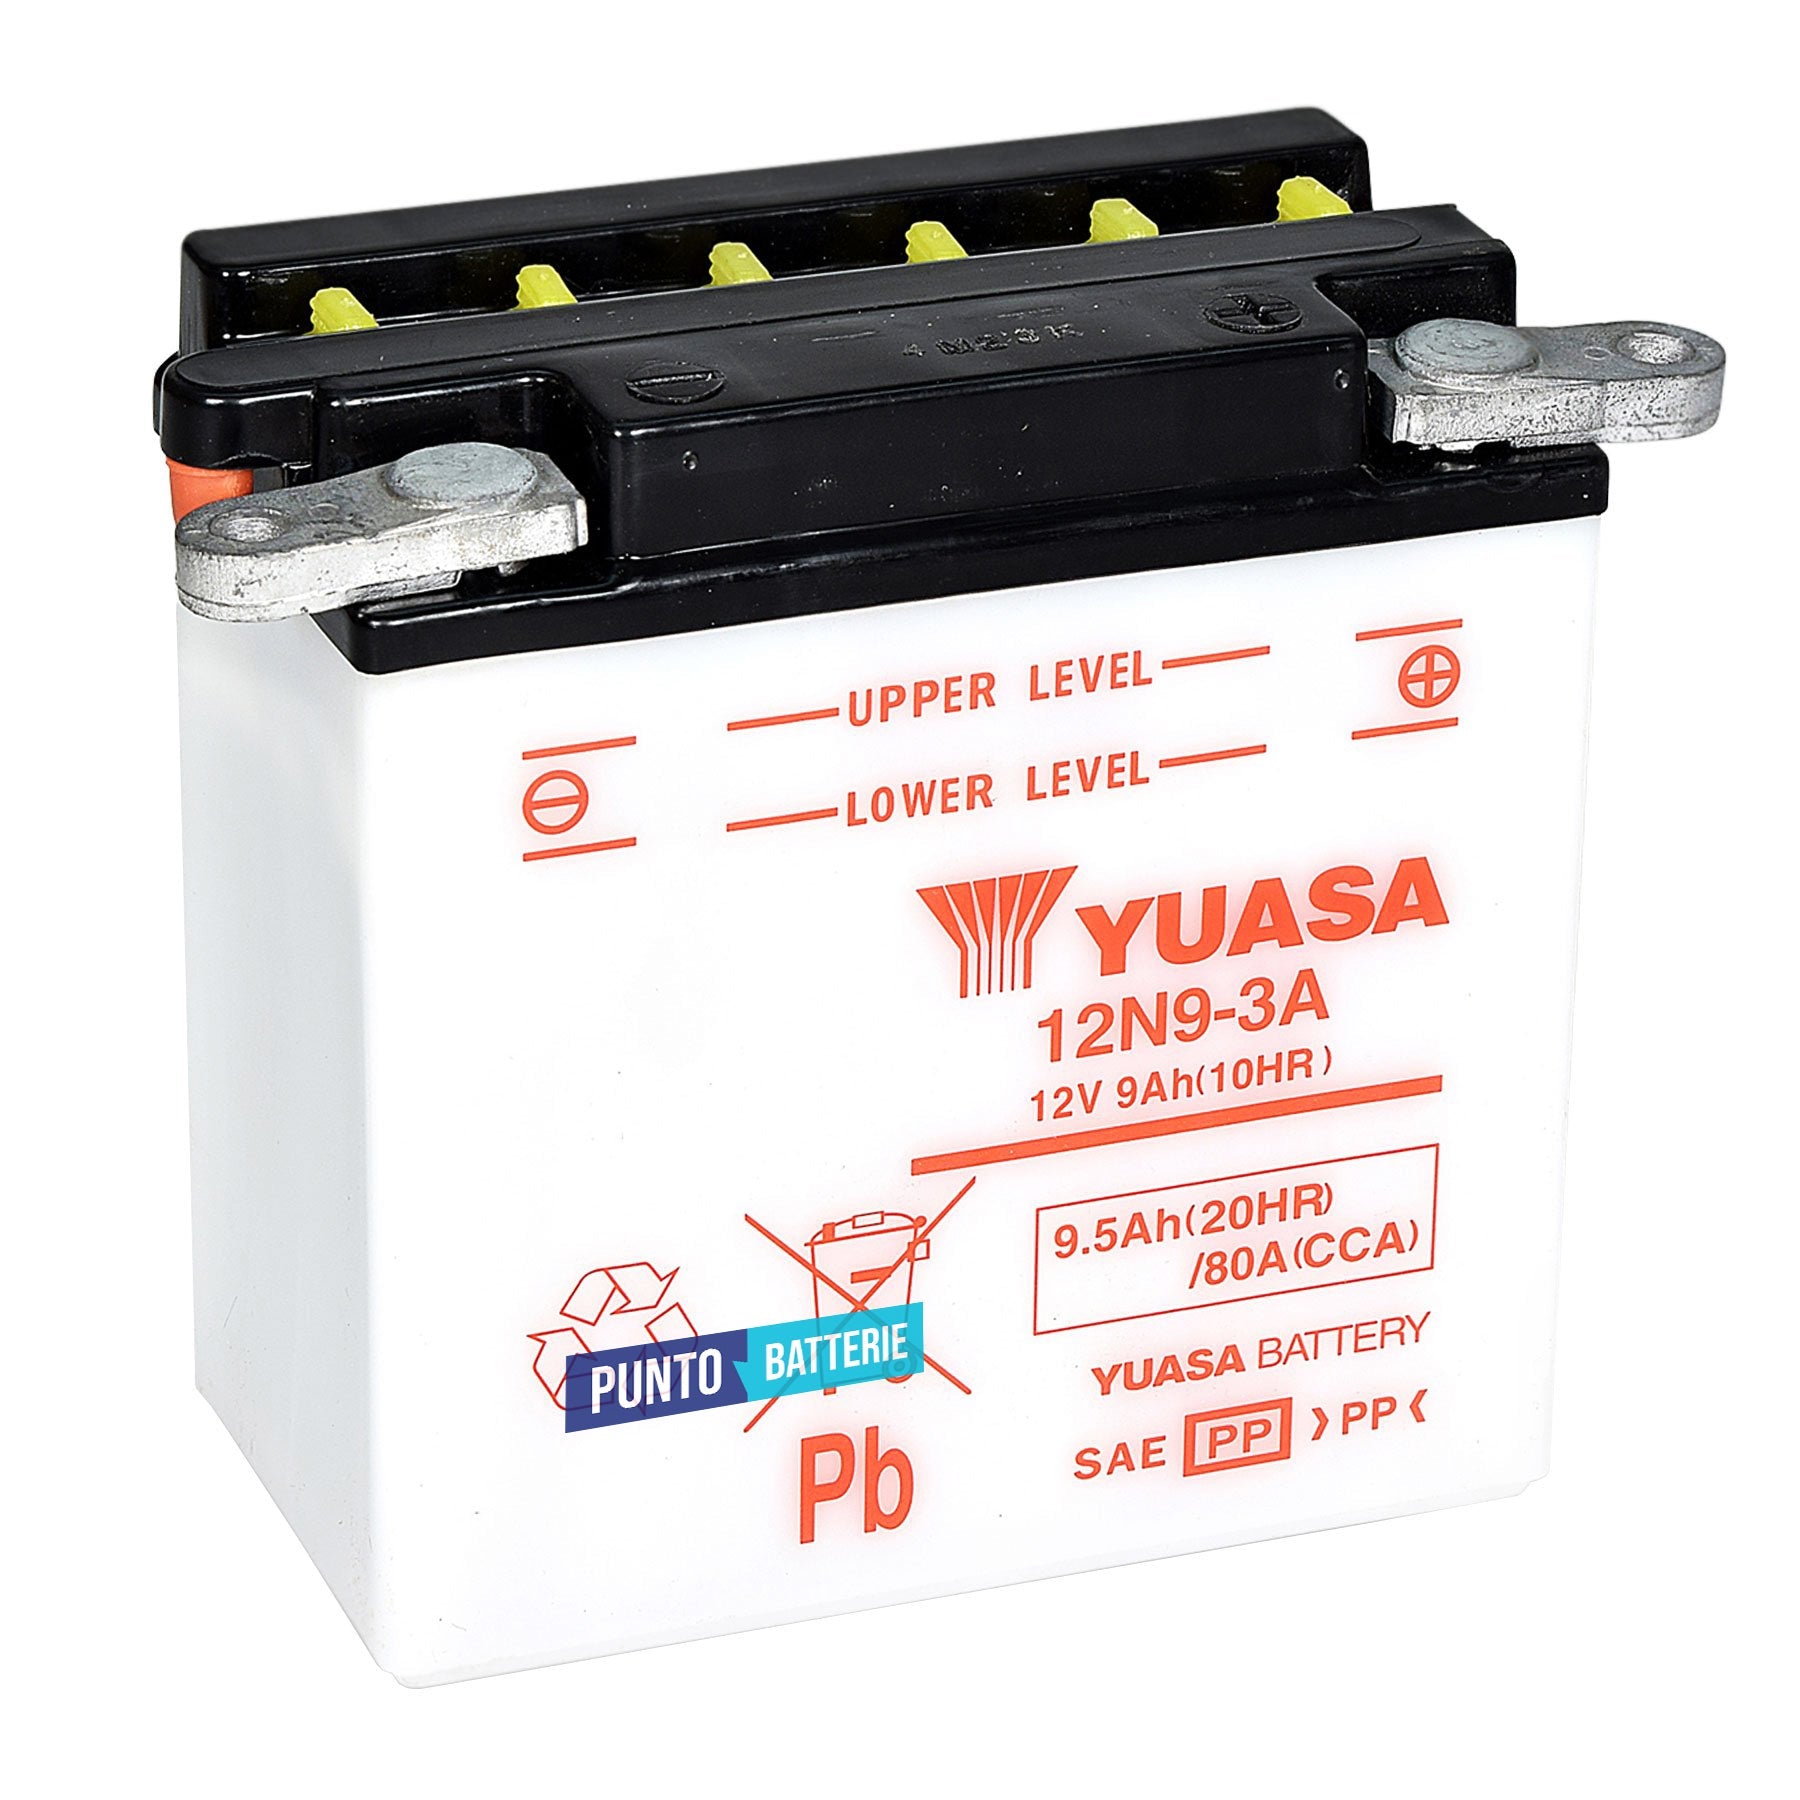 Batteria originale Yuasa Conventional 12N9-3A, dimensioni 135 x 75 x 139, polo positivo a destra, 12 volt, 9 amperora, 80 ampere. Batteria per moto, scooter e powersport.